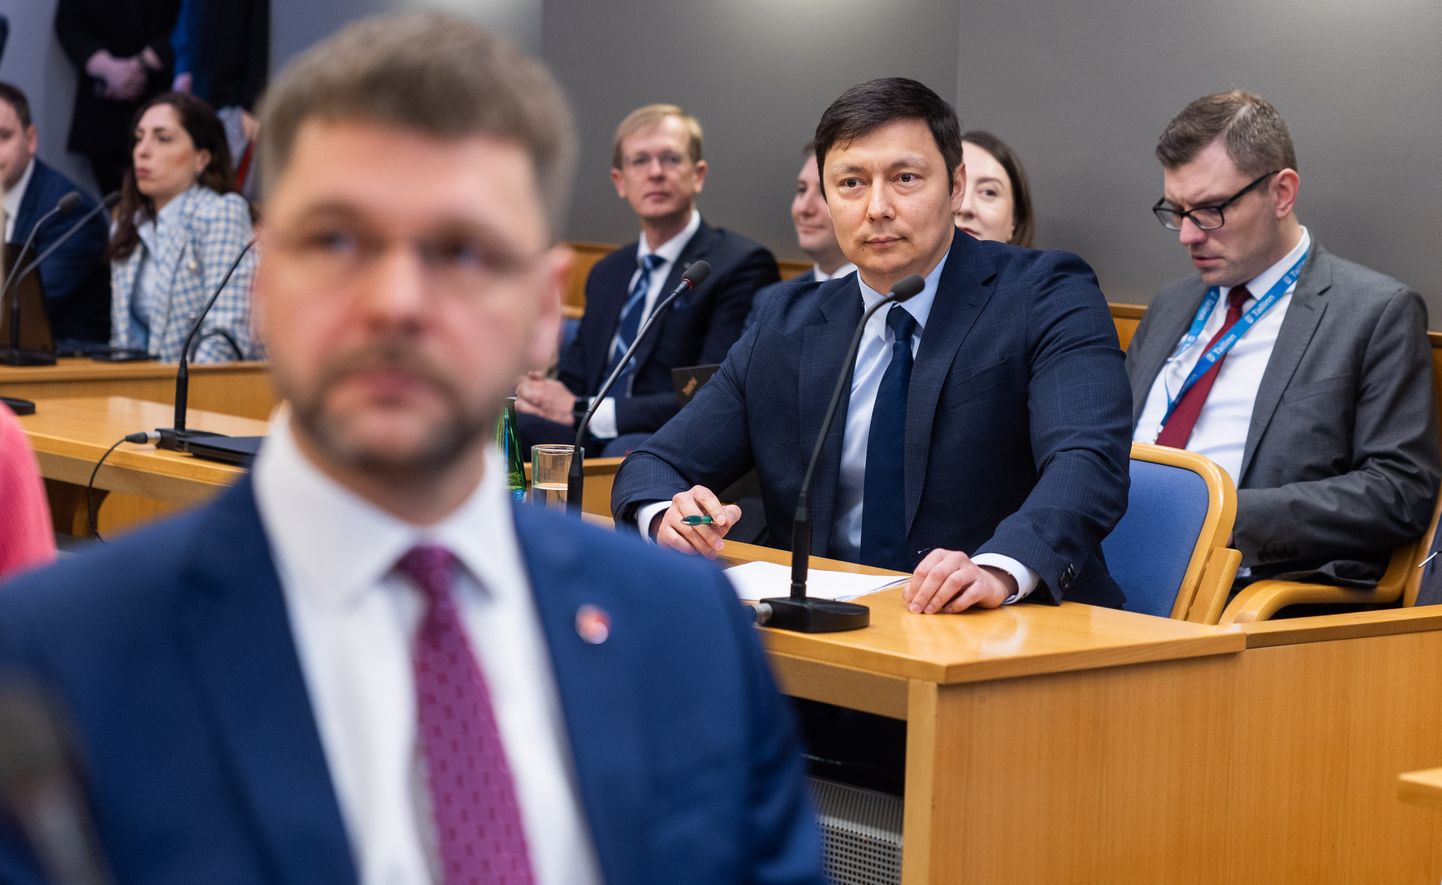 Tallinna linnavolikogu erokorraline istung, kus avaldati umbusaldust linnapeale.